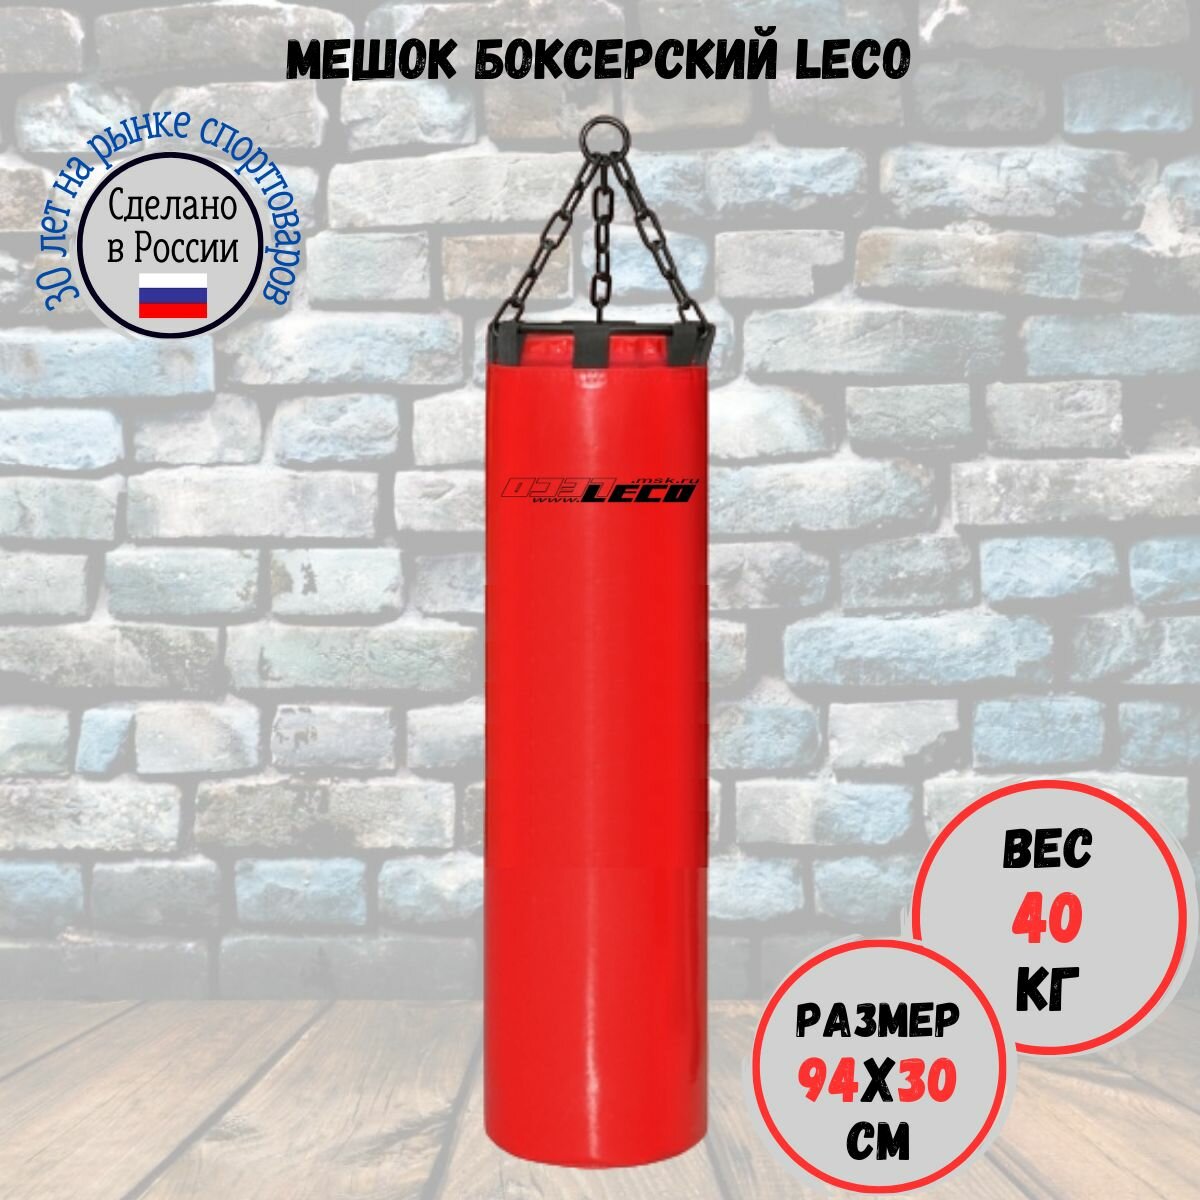 Мешок боксерский 40 кг про, LECO, красный